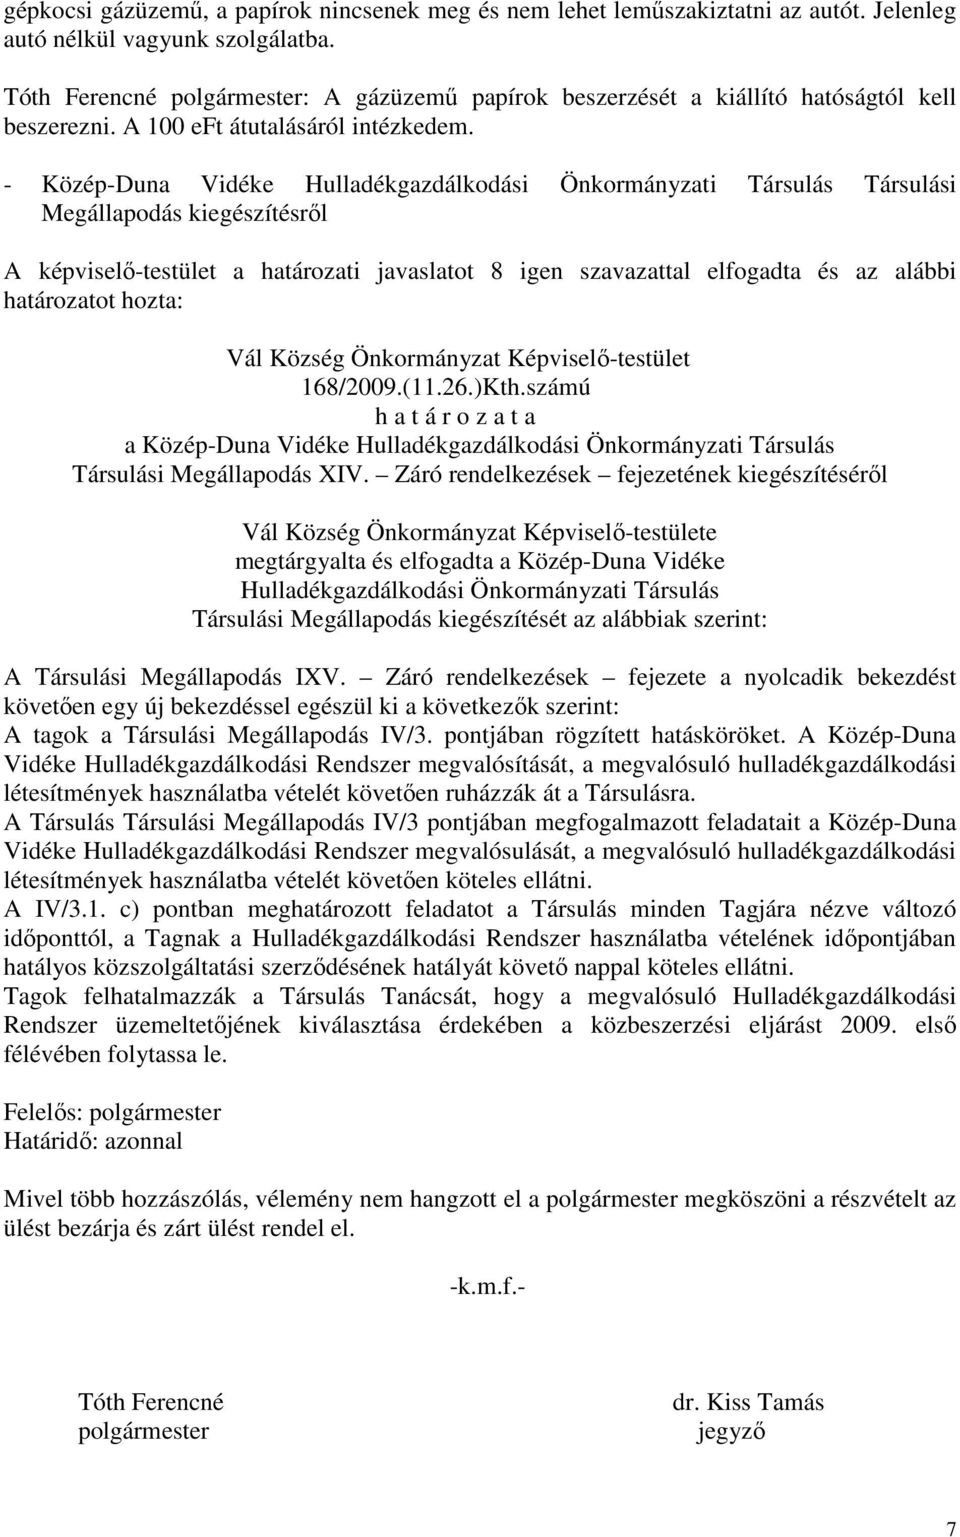 - Közép-Duna Vidéke Hulladékgazdálkodási Önkormányzati Társulás Társulási Megállapodás kiegészítésről A képviselő-testület a határozati javaslatot 8 igen szavazattal elfogadta és az alábbi